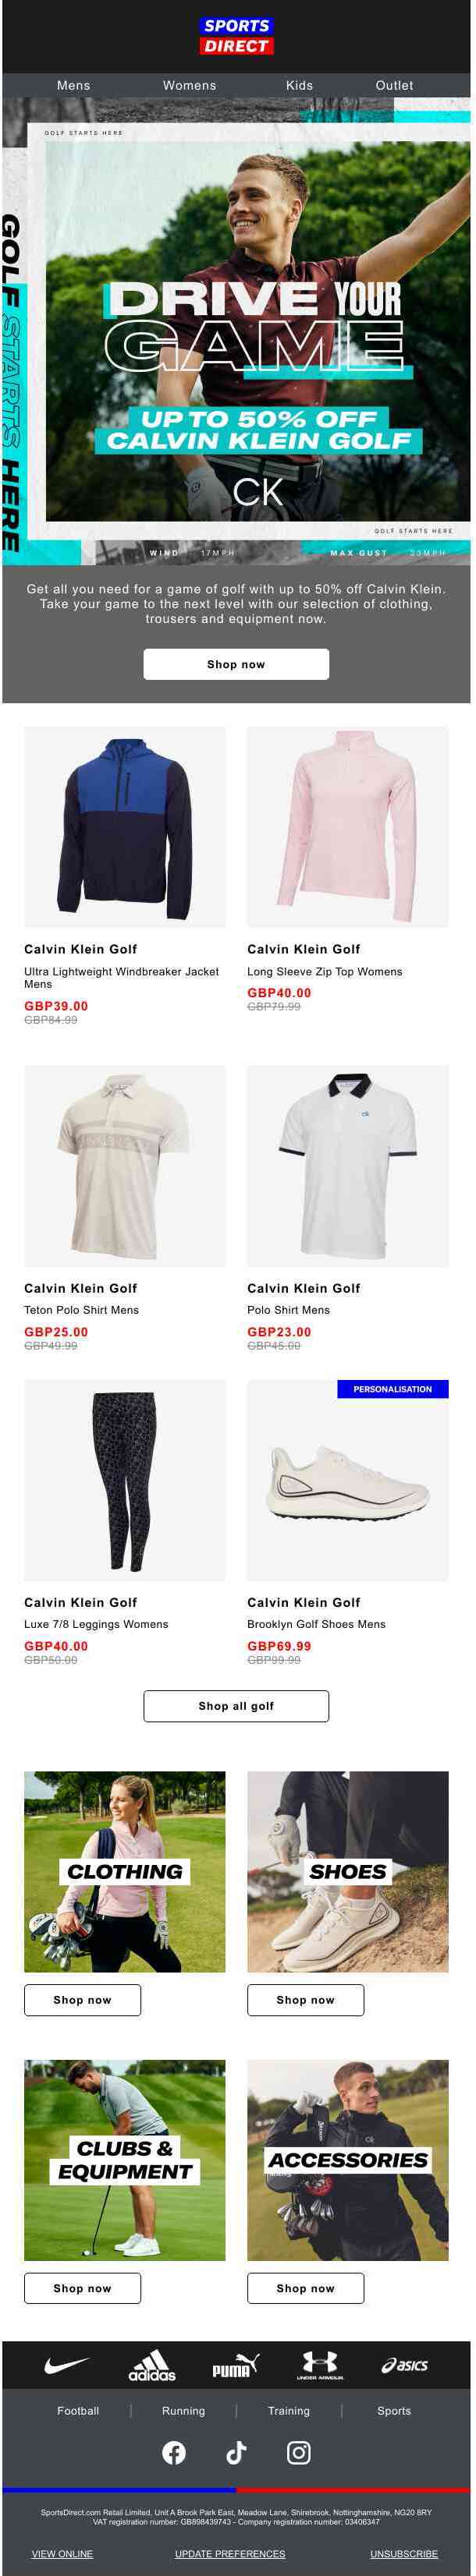 Calvin Klein Golf: Up to 50% Off 🏌️‍♂️